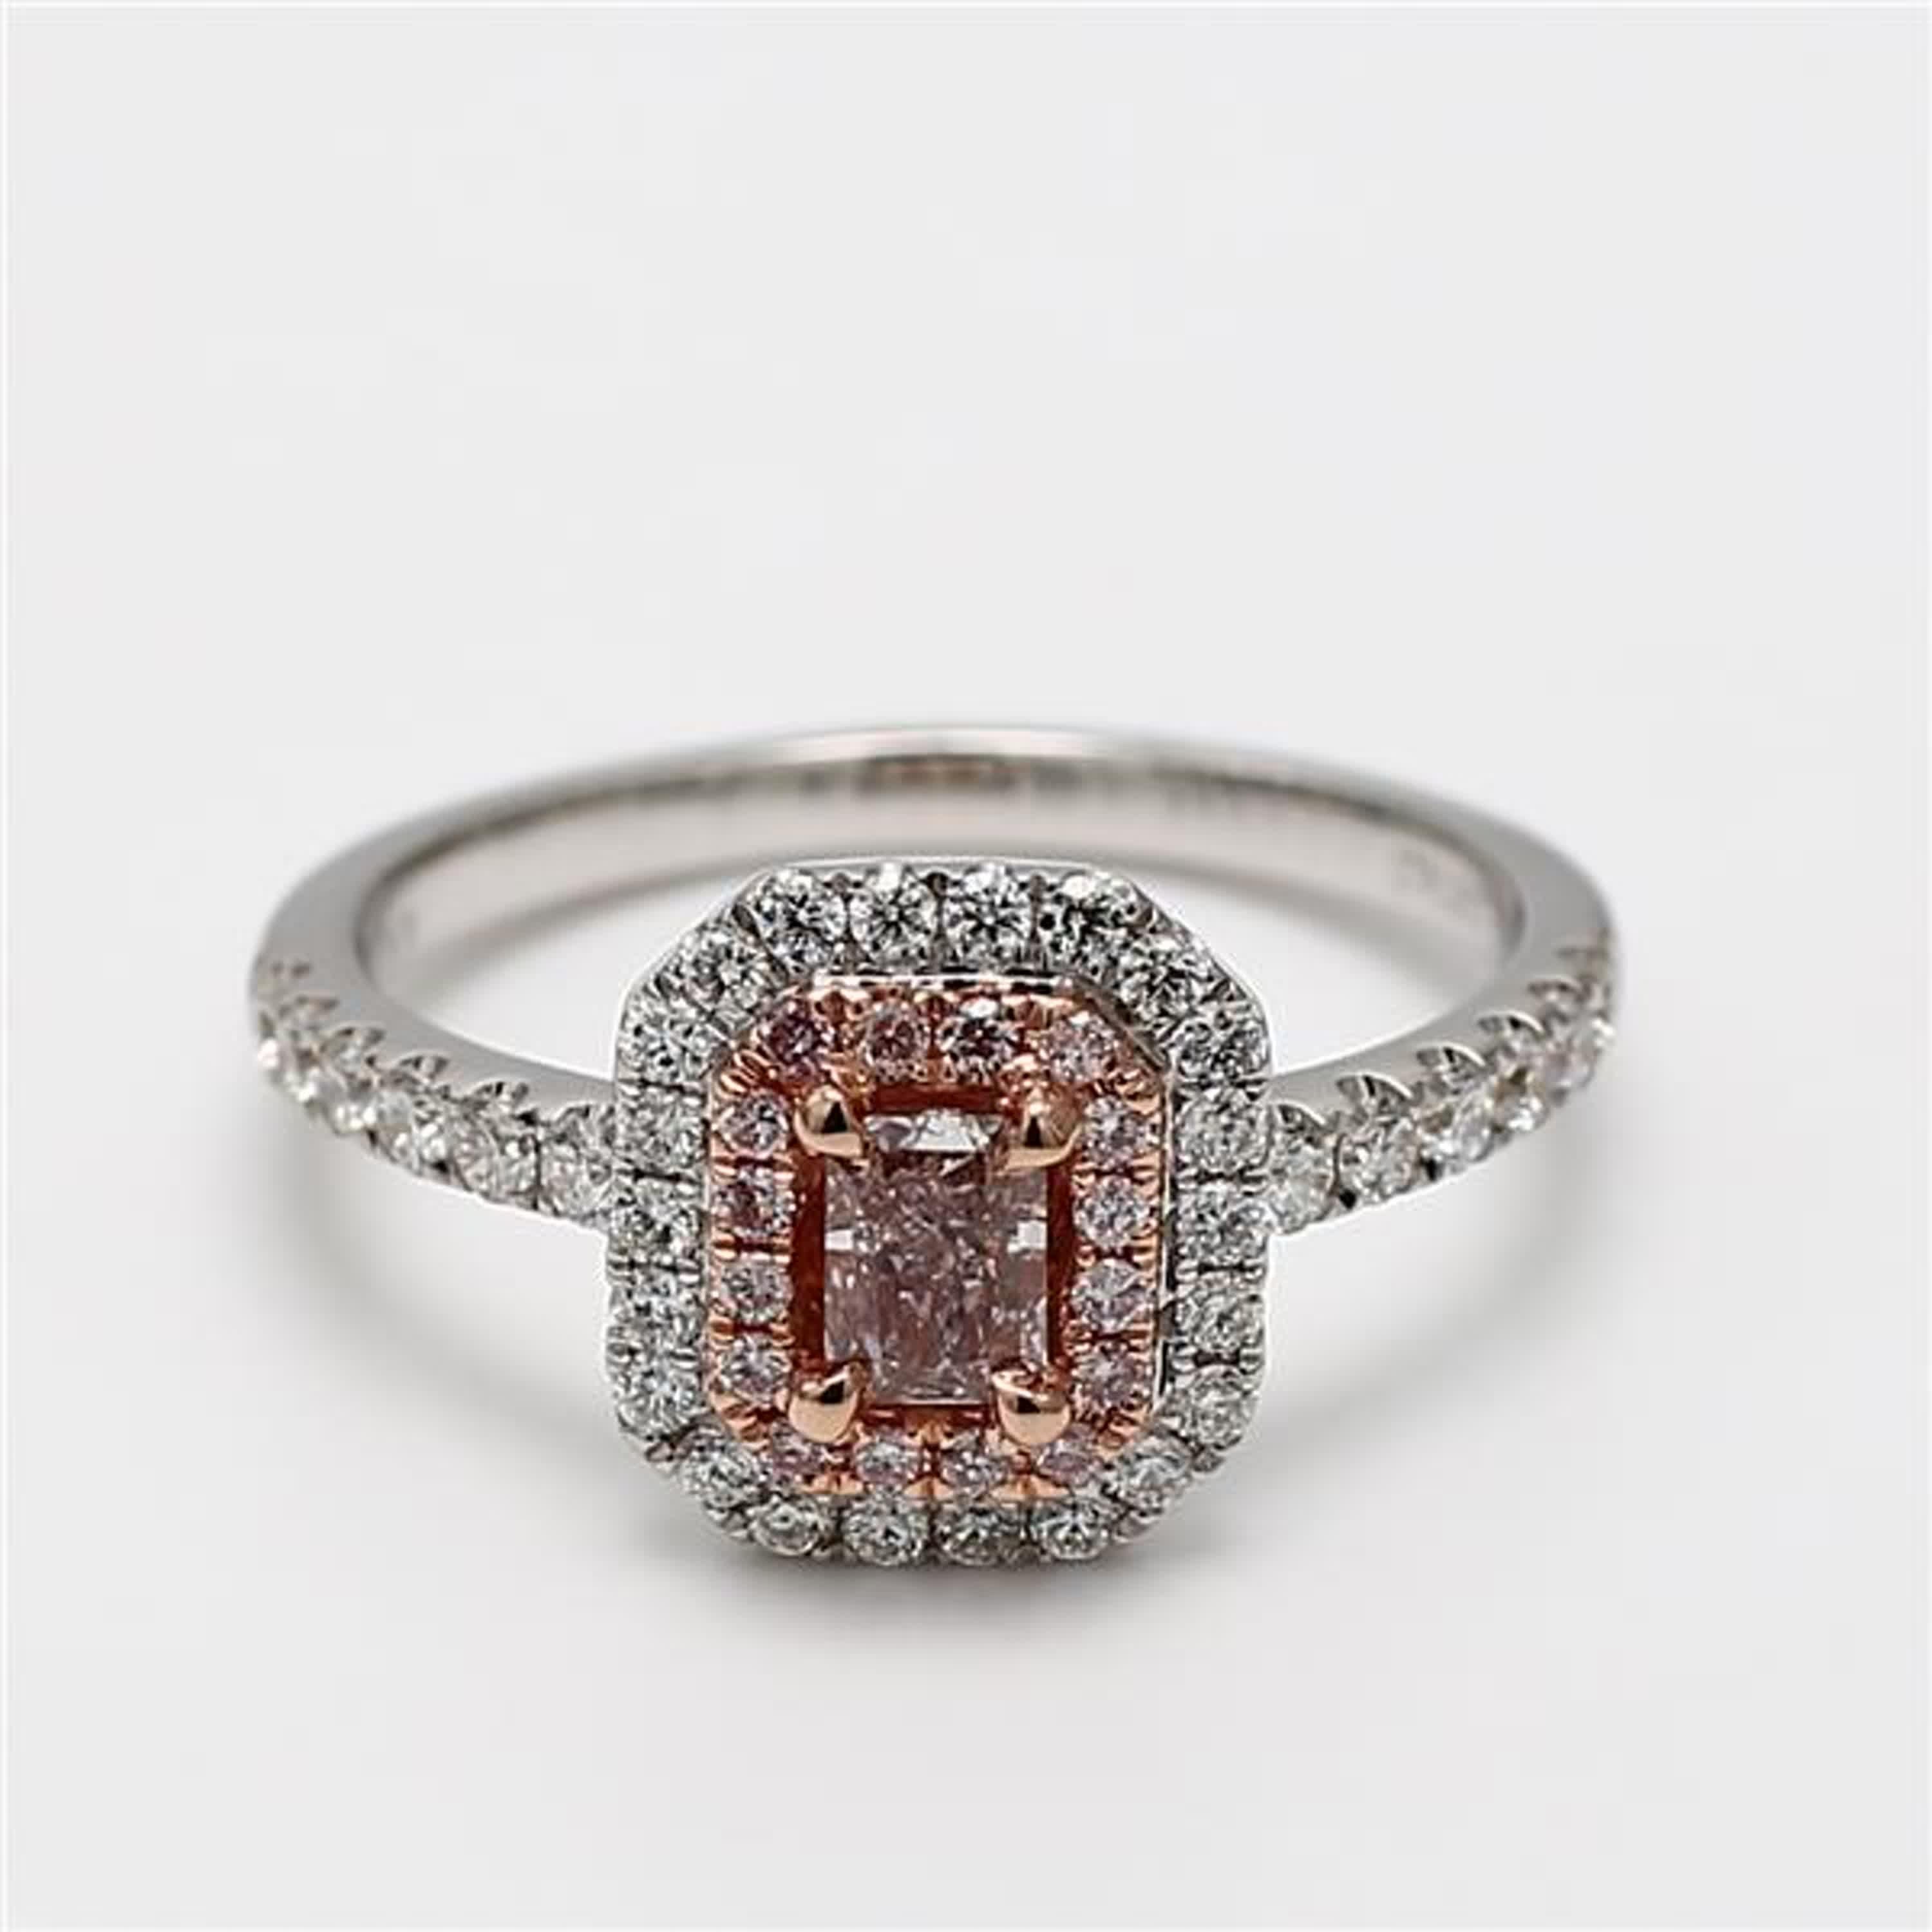 Der klassische GIA-zertifizierte Diamantring von RareGemWorld. In einer wunderschönen Fassung aus 18 Karat Rosé- und Weißgold und Platin mit einem natürlichen rosa Diamanten im Strahlenschliff. Der rosafarbene Diamant ist umgeben von einem runden